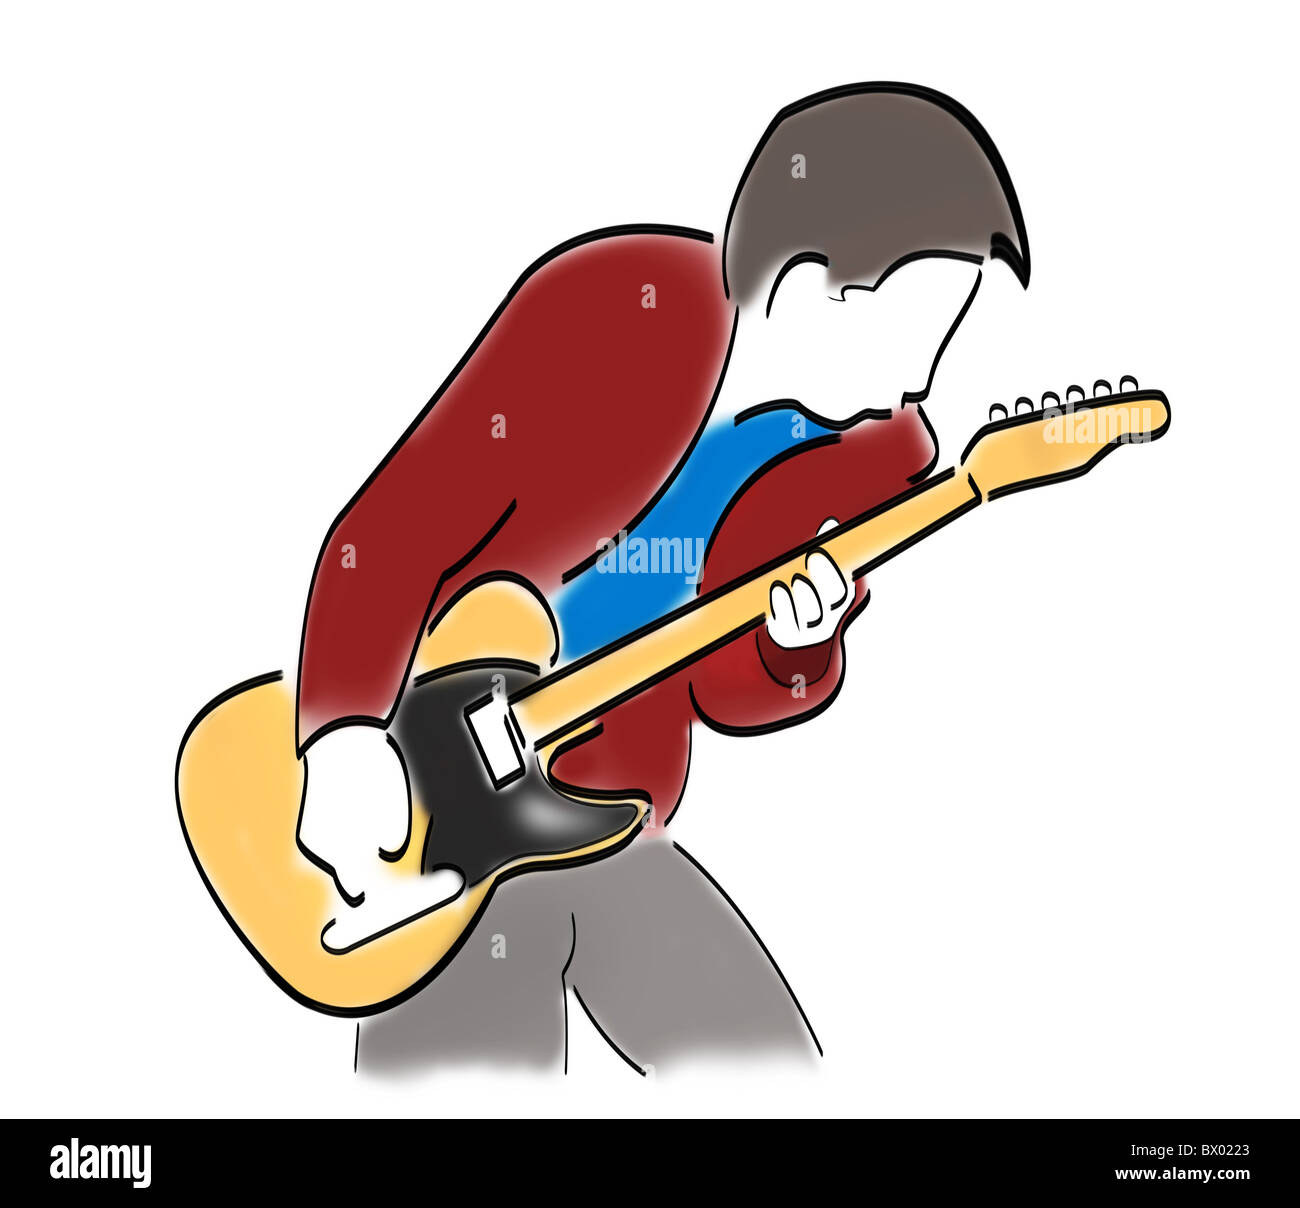 Résumé Une caricature d'un guitariste jouant une guitare électrique. Banque D'Images